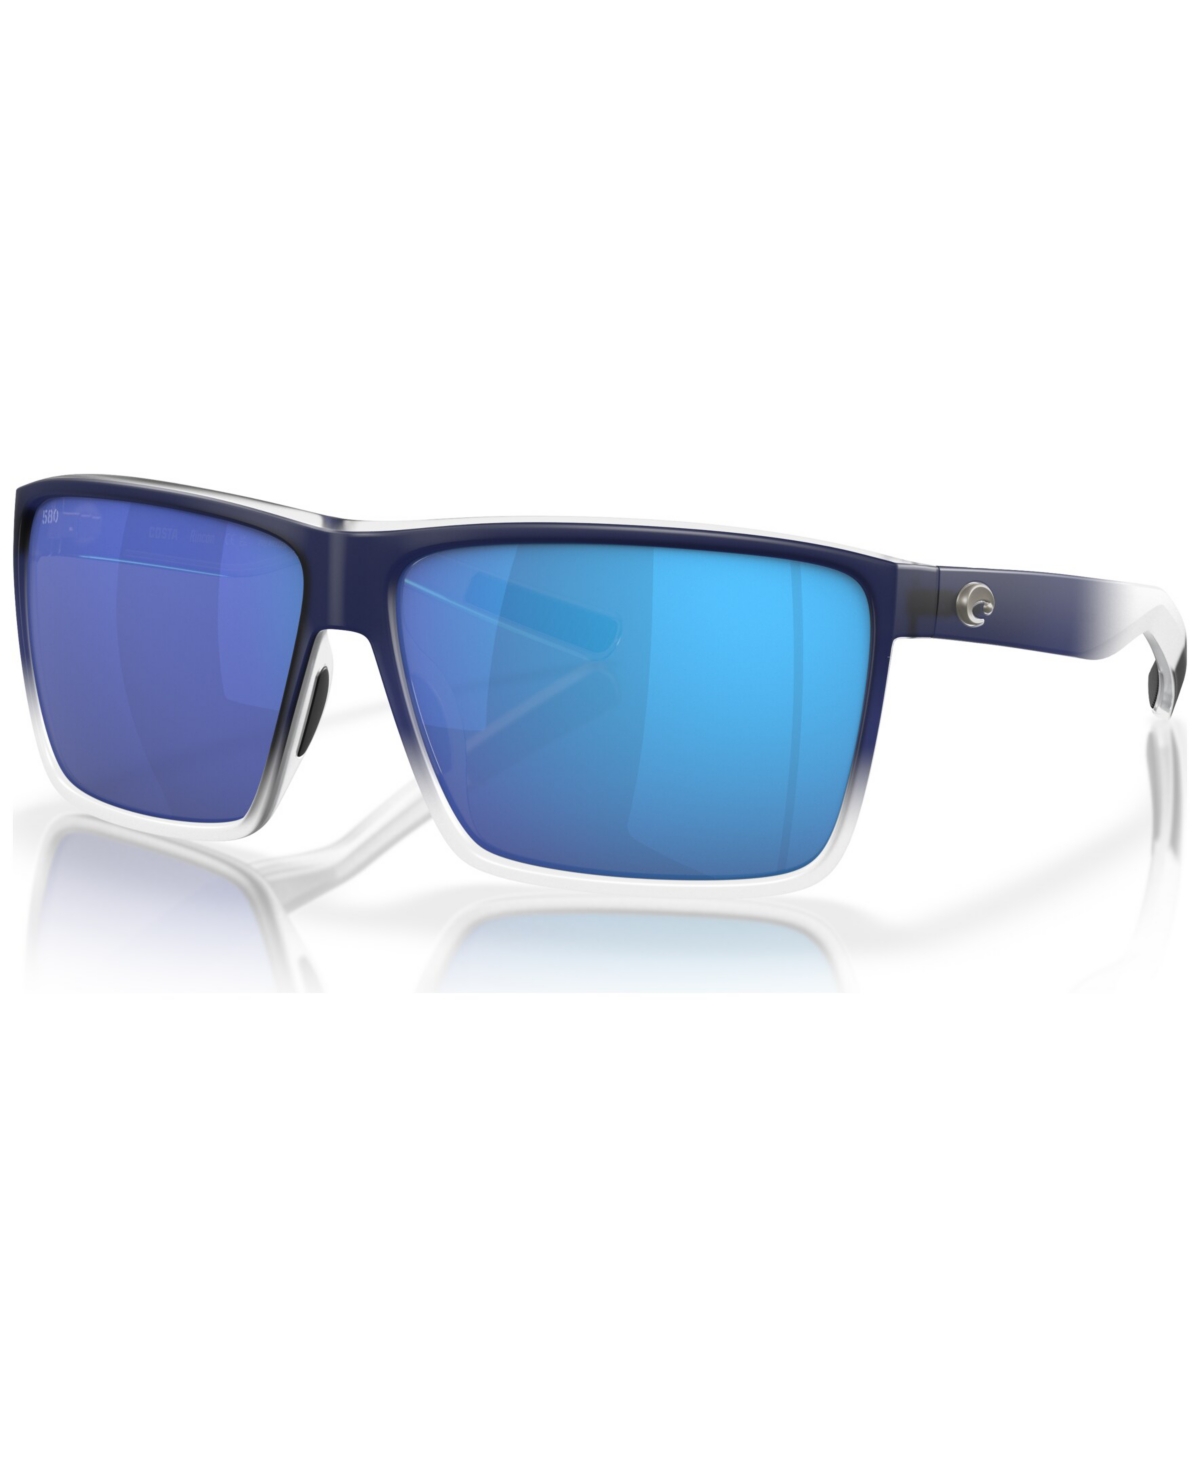 Costa Del Mar Men's Polarized Sunglasses, Rincon In Matte Blue Fade